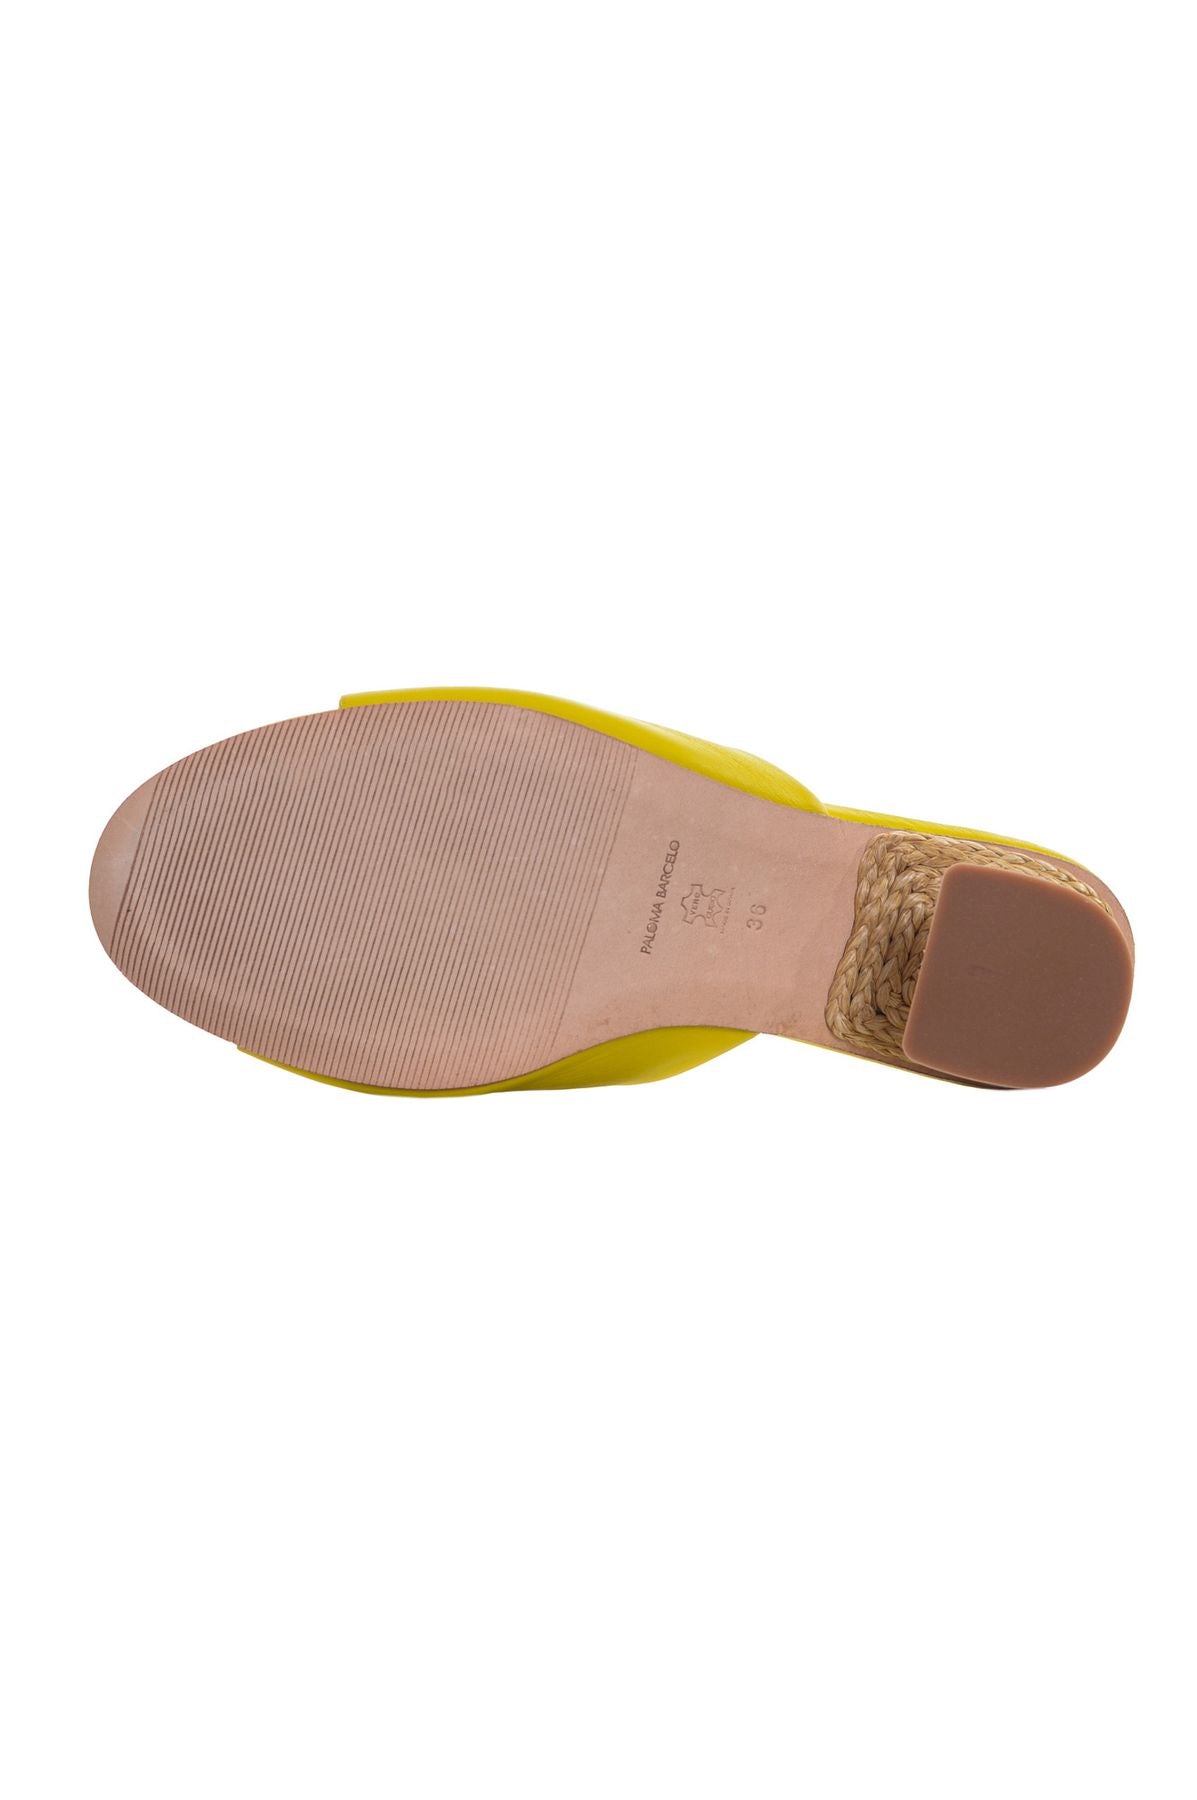 PALOMA BARCELÓ Spring/Summer Sandals 7323100